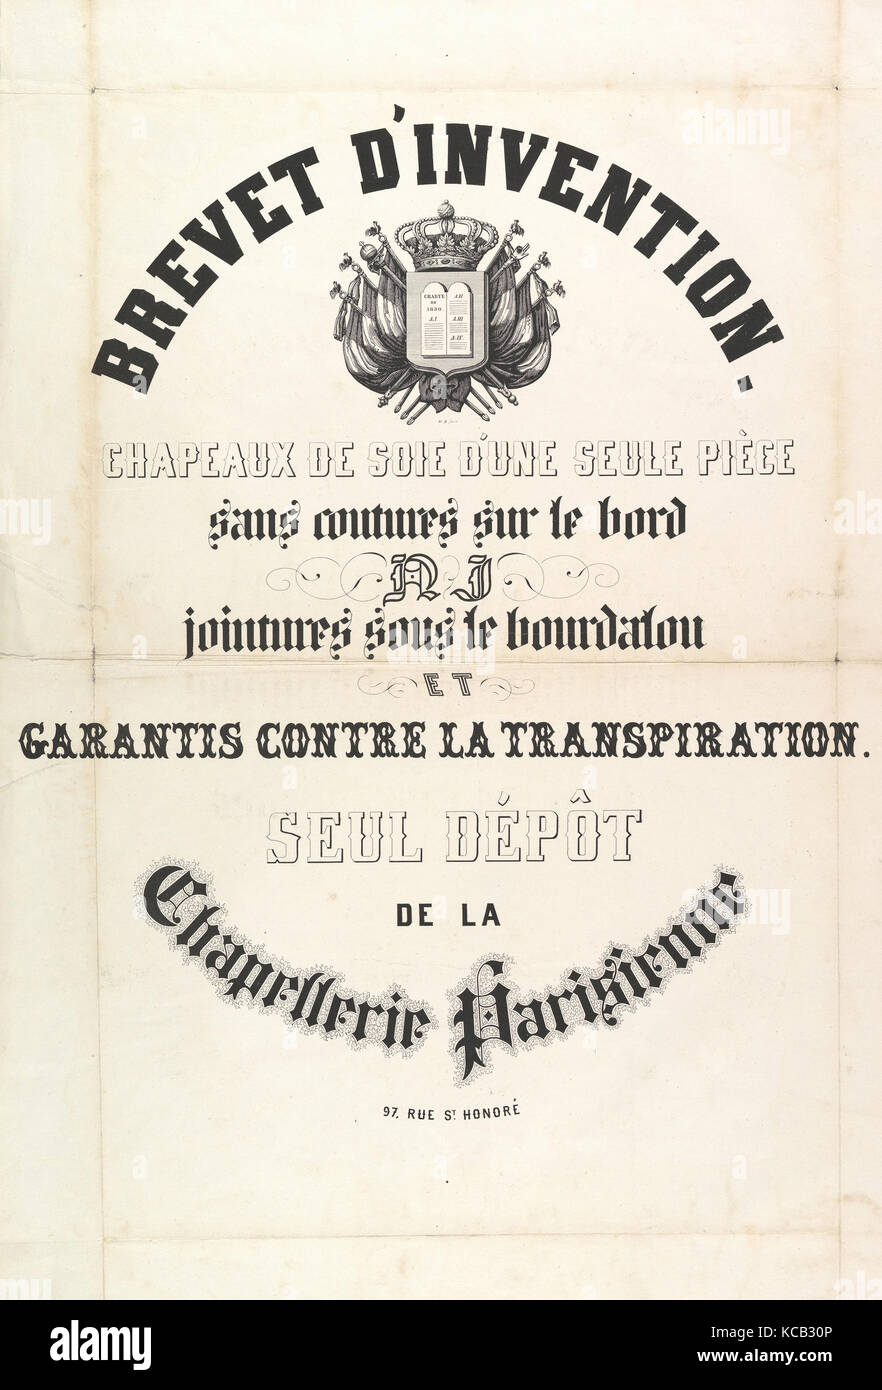 Brevet d'invenzione. Chapeaux de soie d'une seule pièce..., anonimo,  francese del XIX secolo xix secolo Foto stock - Alamy